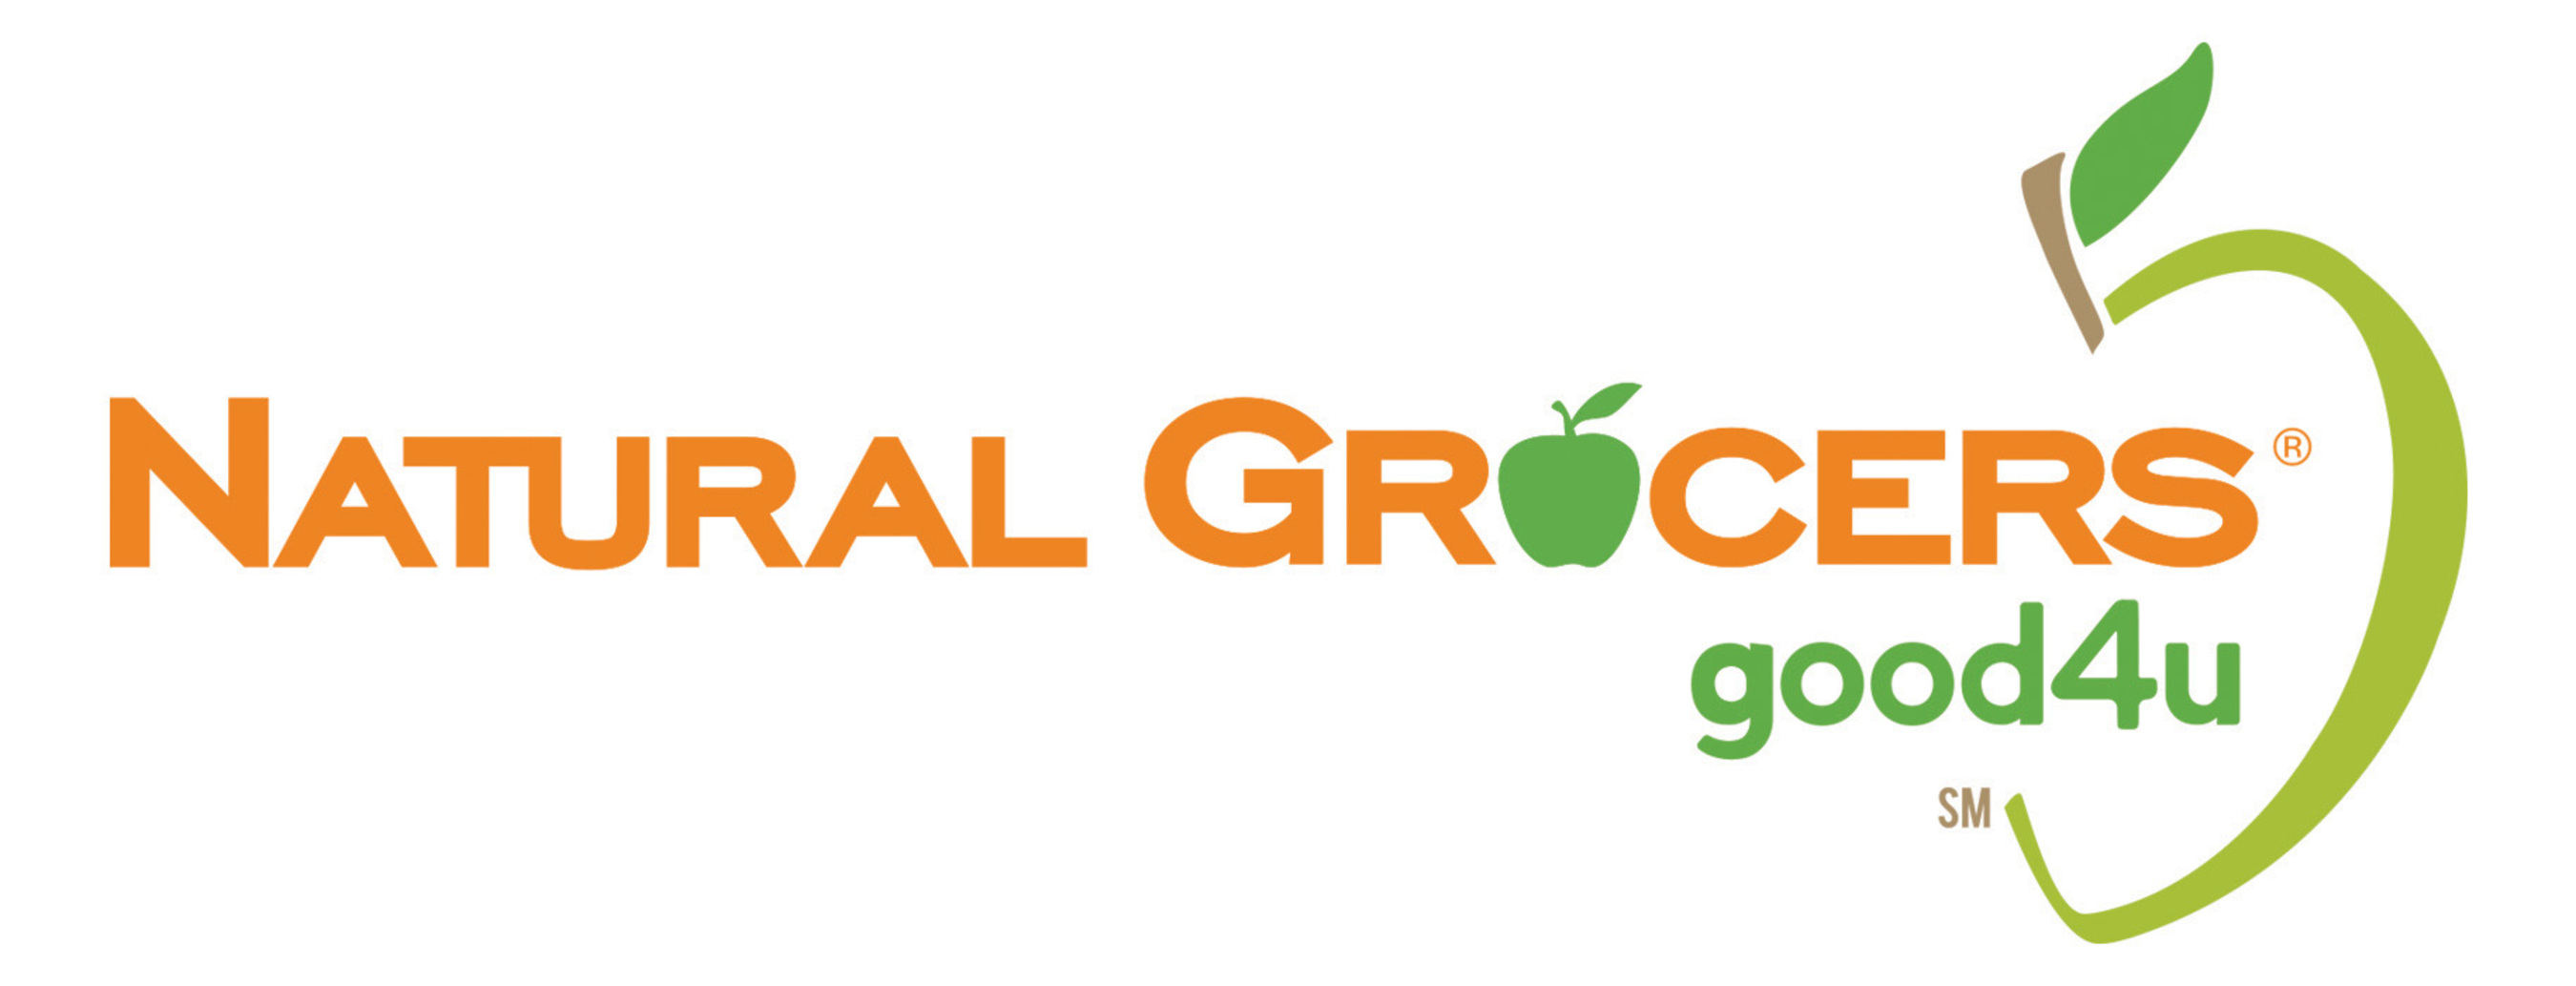 Natural Grocers Logos